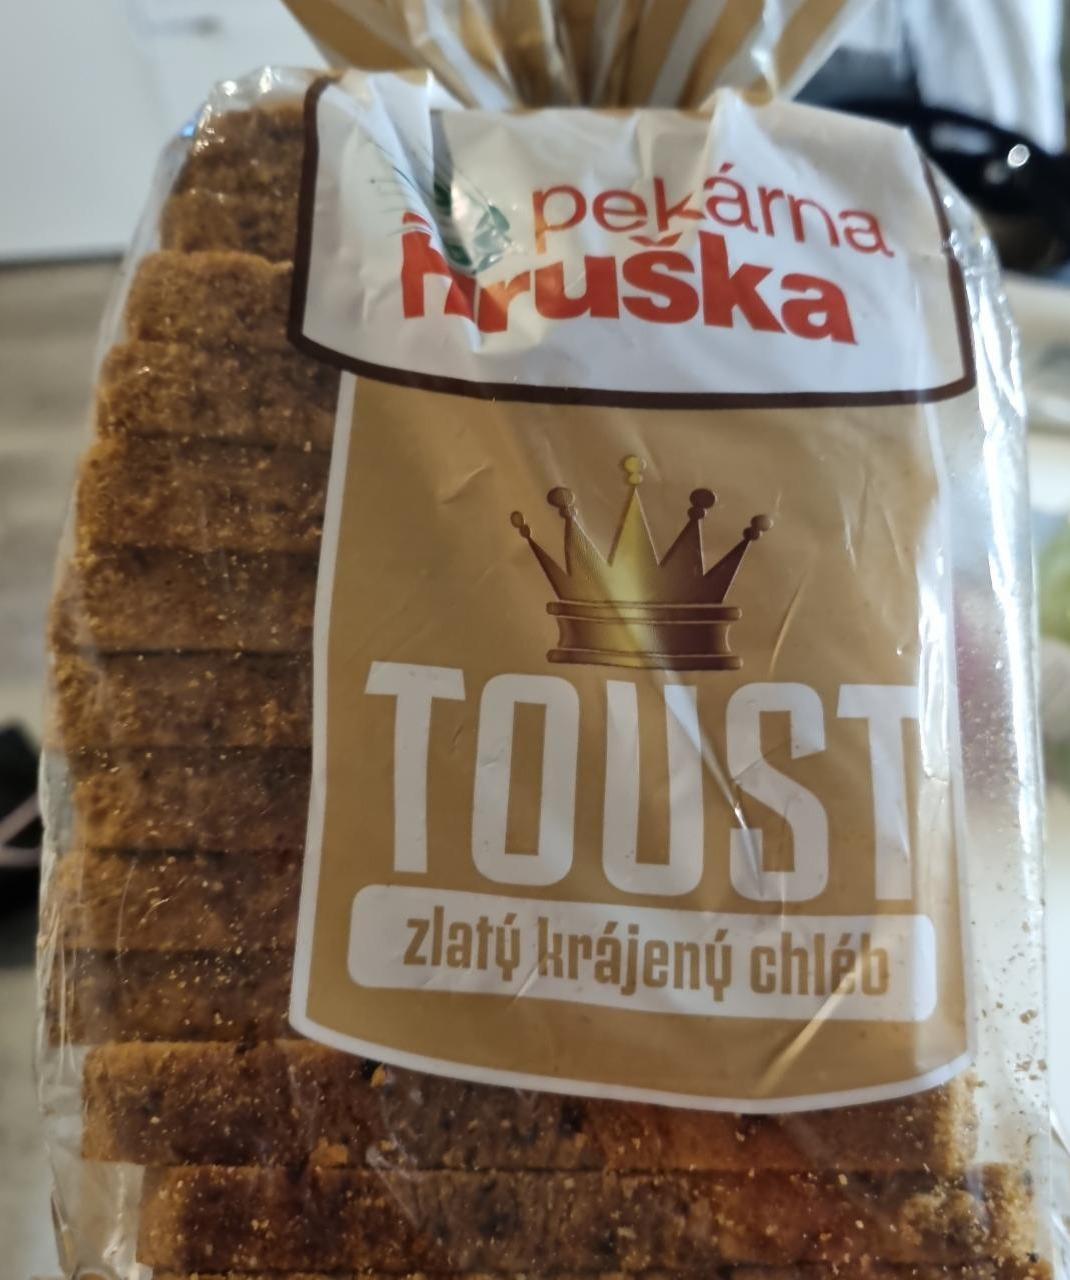 Fotografie - Toust zlatý krájený chléb Hruška